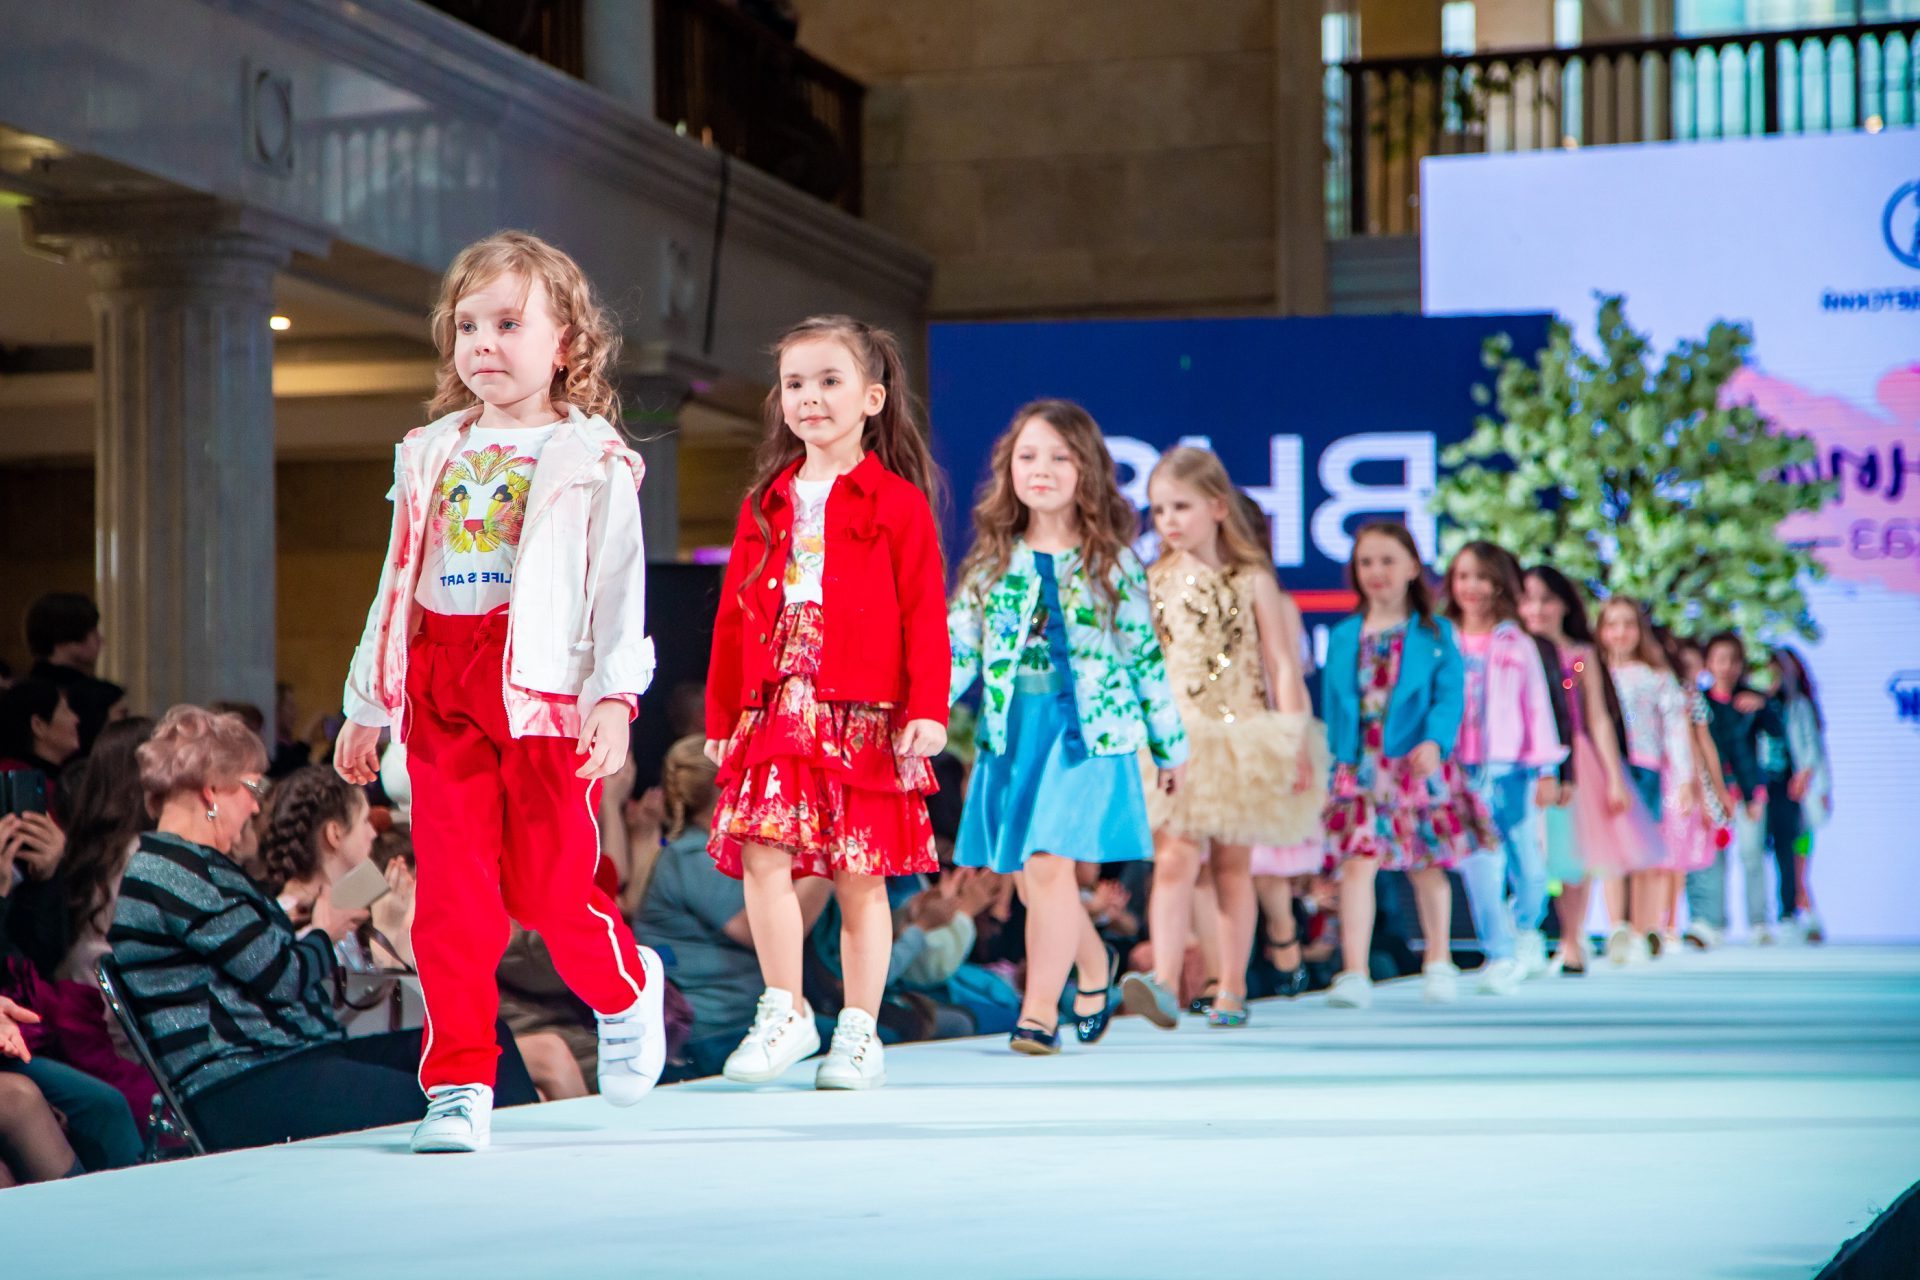 השפעת הקניות המקוונות על מגמות האופנה לילדים בישראל